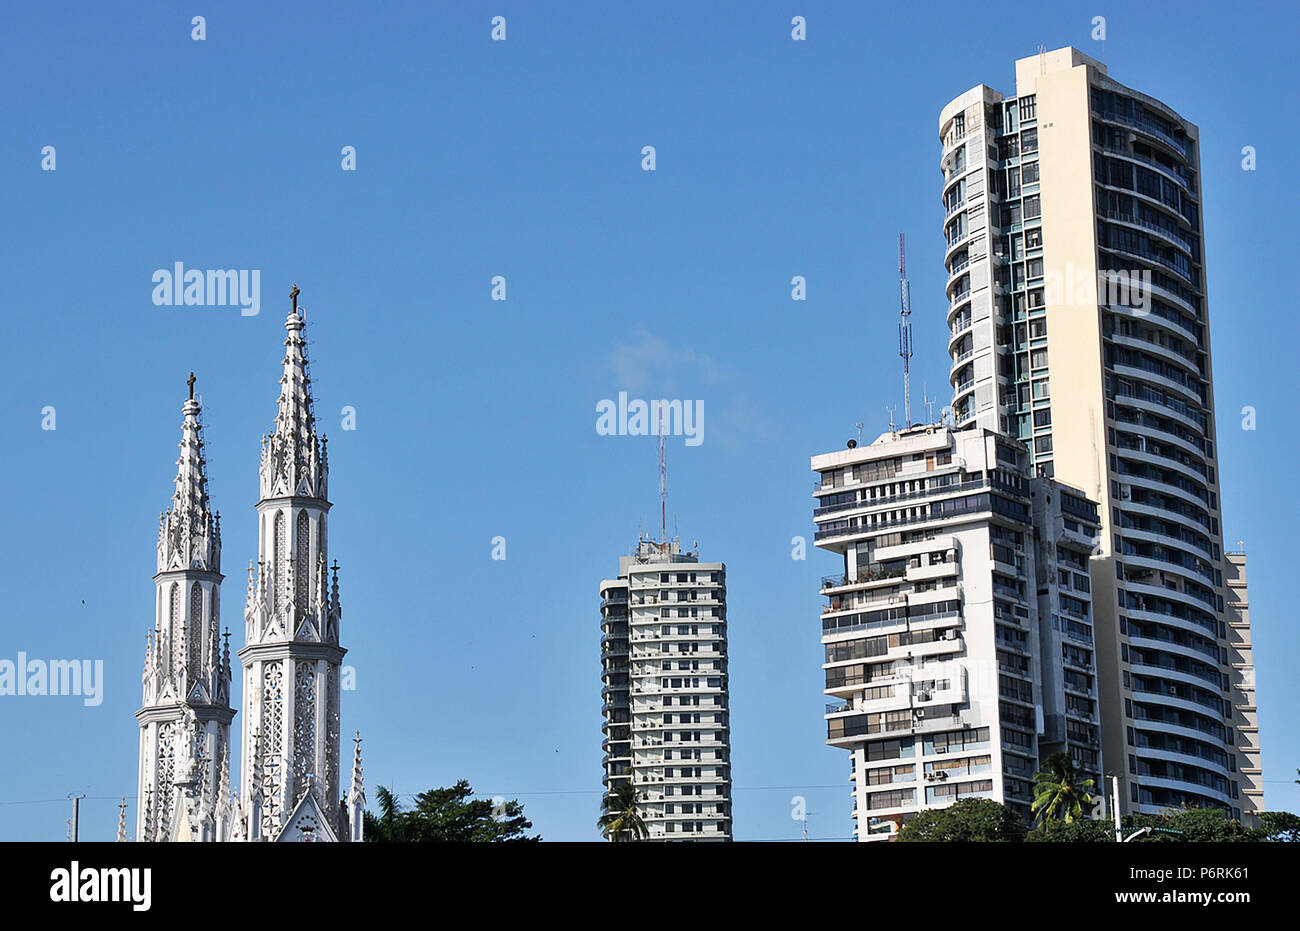 El Carmen iglesia y torres residenciales, Ciudad de Panamá, República de Panamá Foto de stock